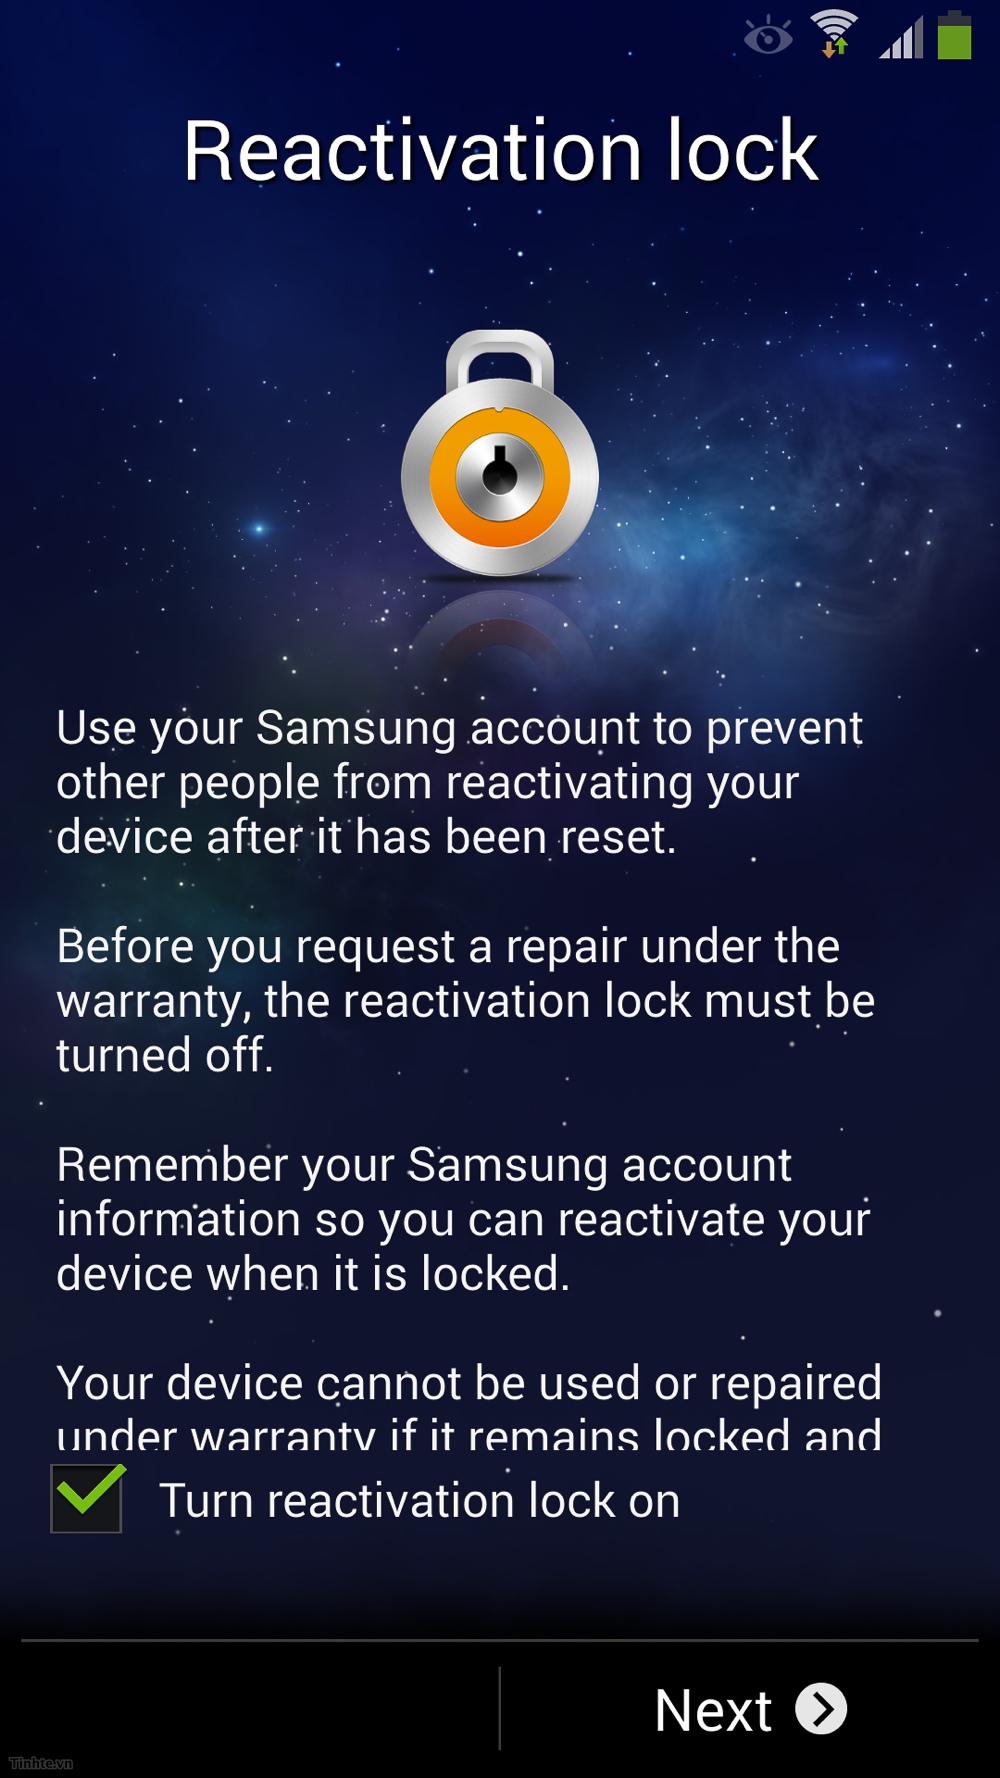 Samsung_Activation_Lock.jpg